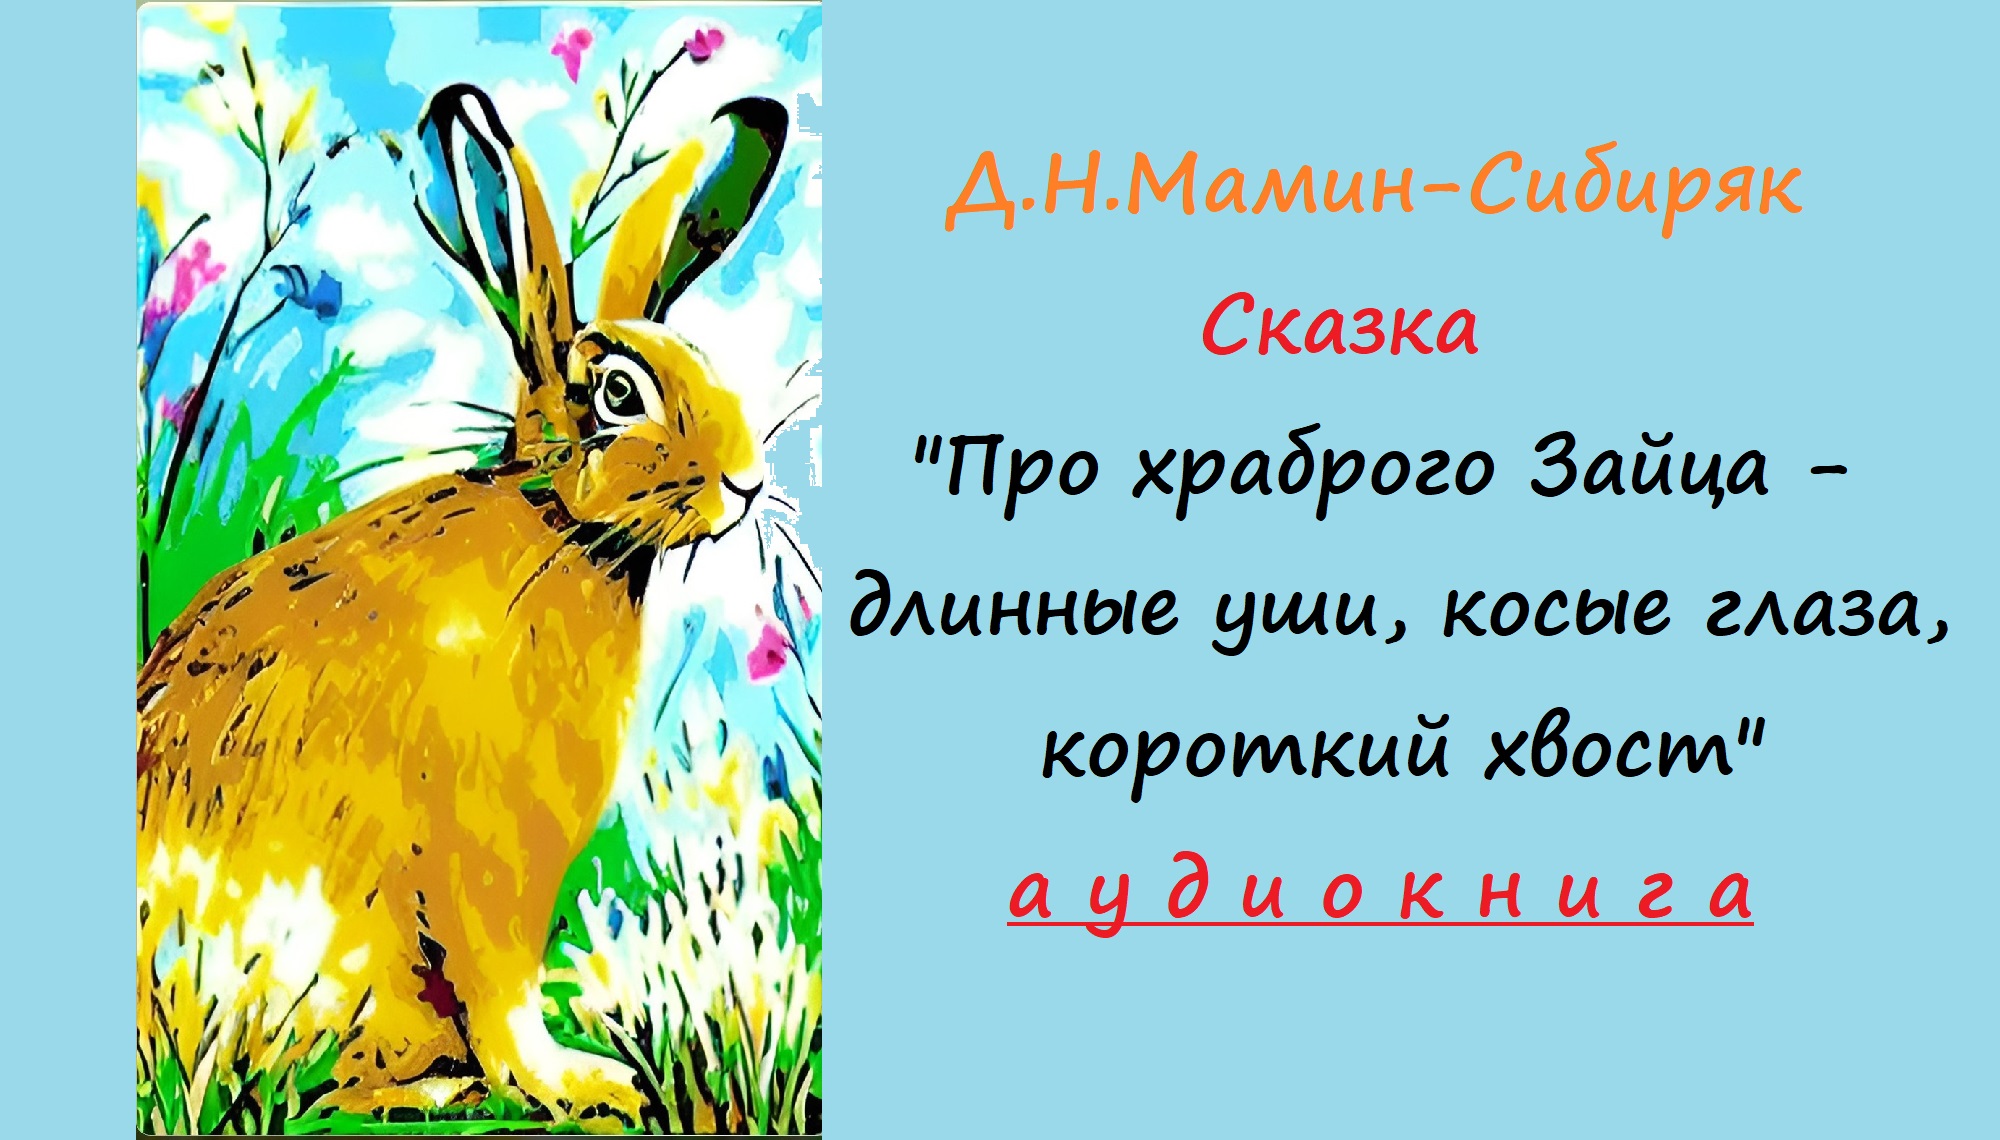 Про храброго зайца падеж. Сказка о добре о зайчике. Храбрый кролик. Автора сказка про храброго зайца длинные уши кос глаза короткий хвост. Заяц длинные уши косые глаза короткий хвост рабочий лист.